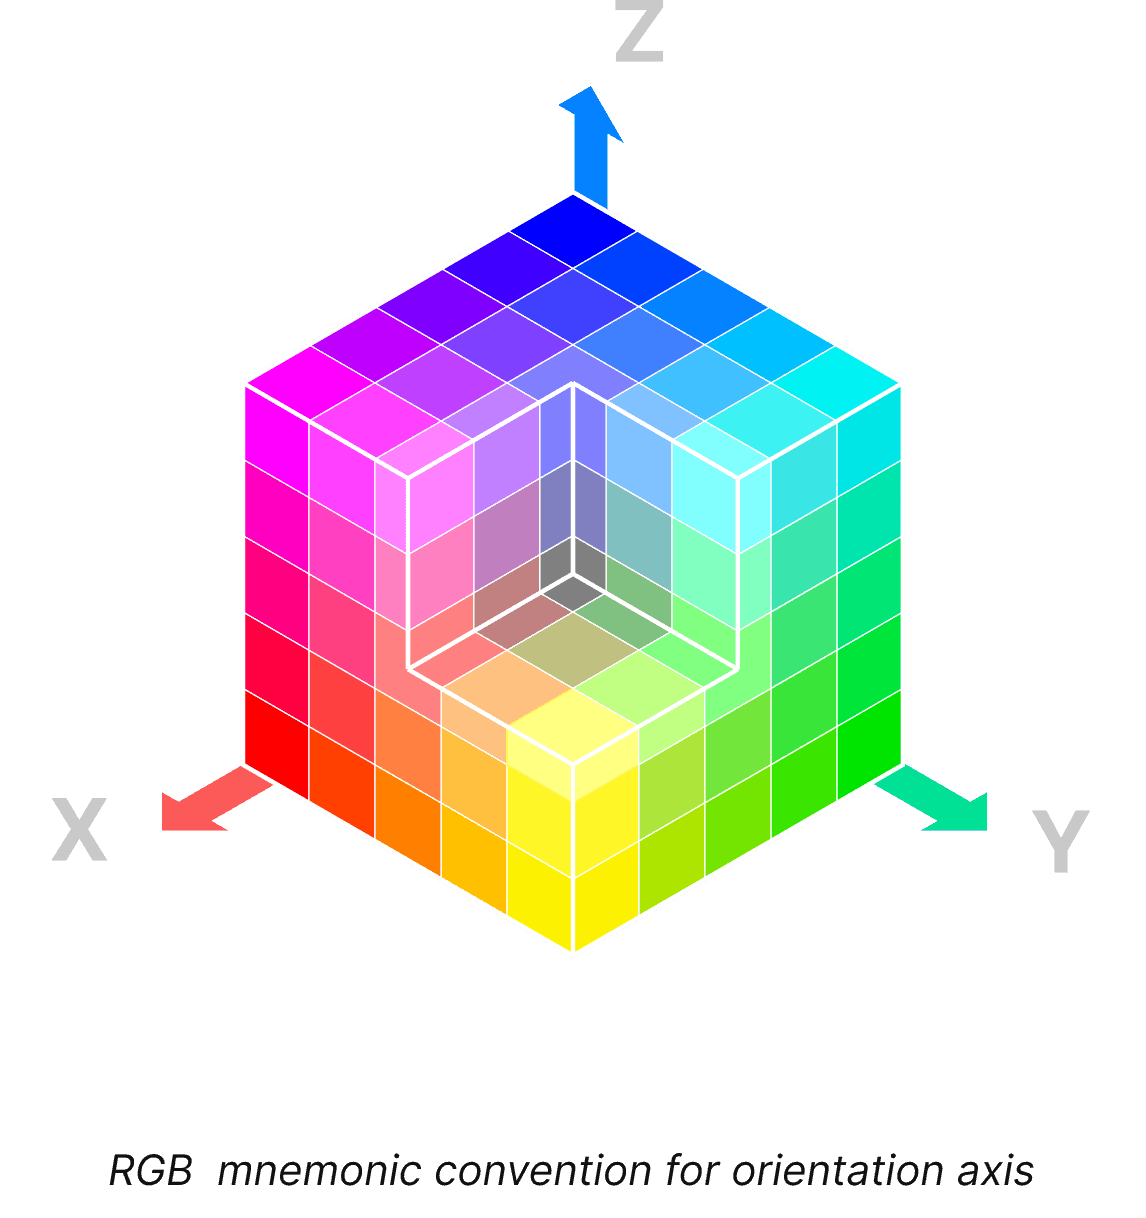 Diagramm zur Erläuterung eines UI-Gestaltungsprinzips, der so genannten mnemonischen Konvention